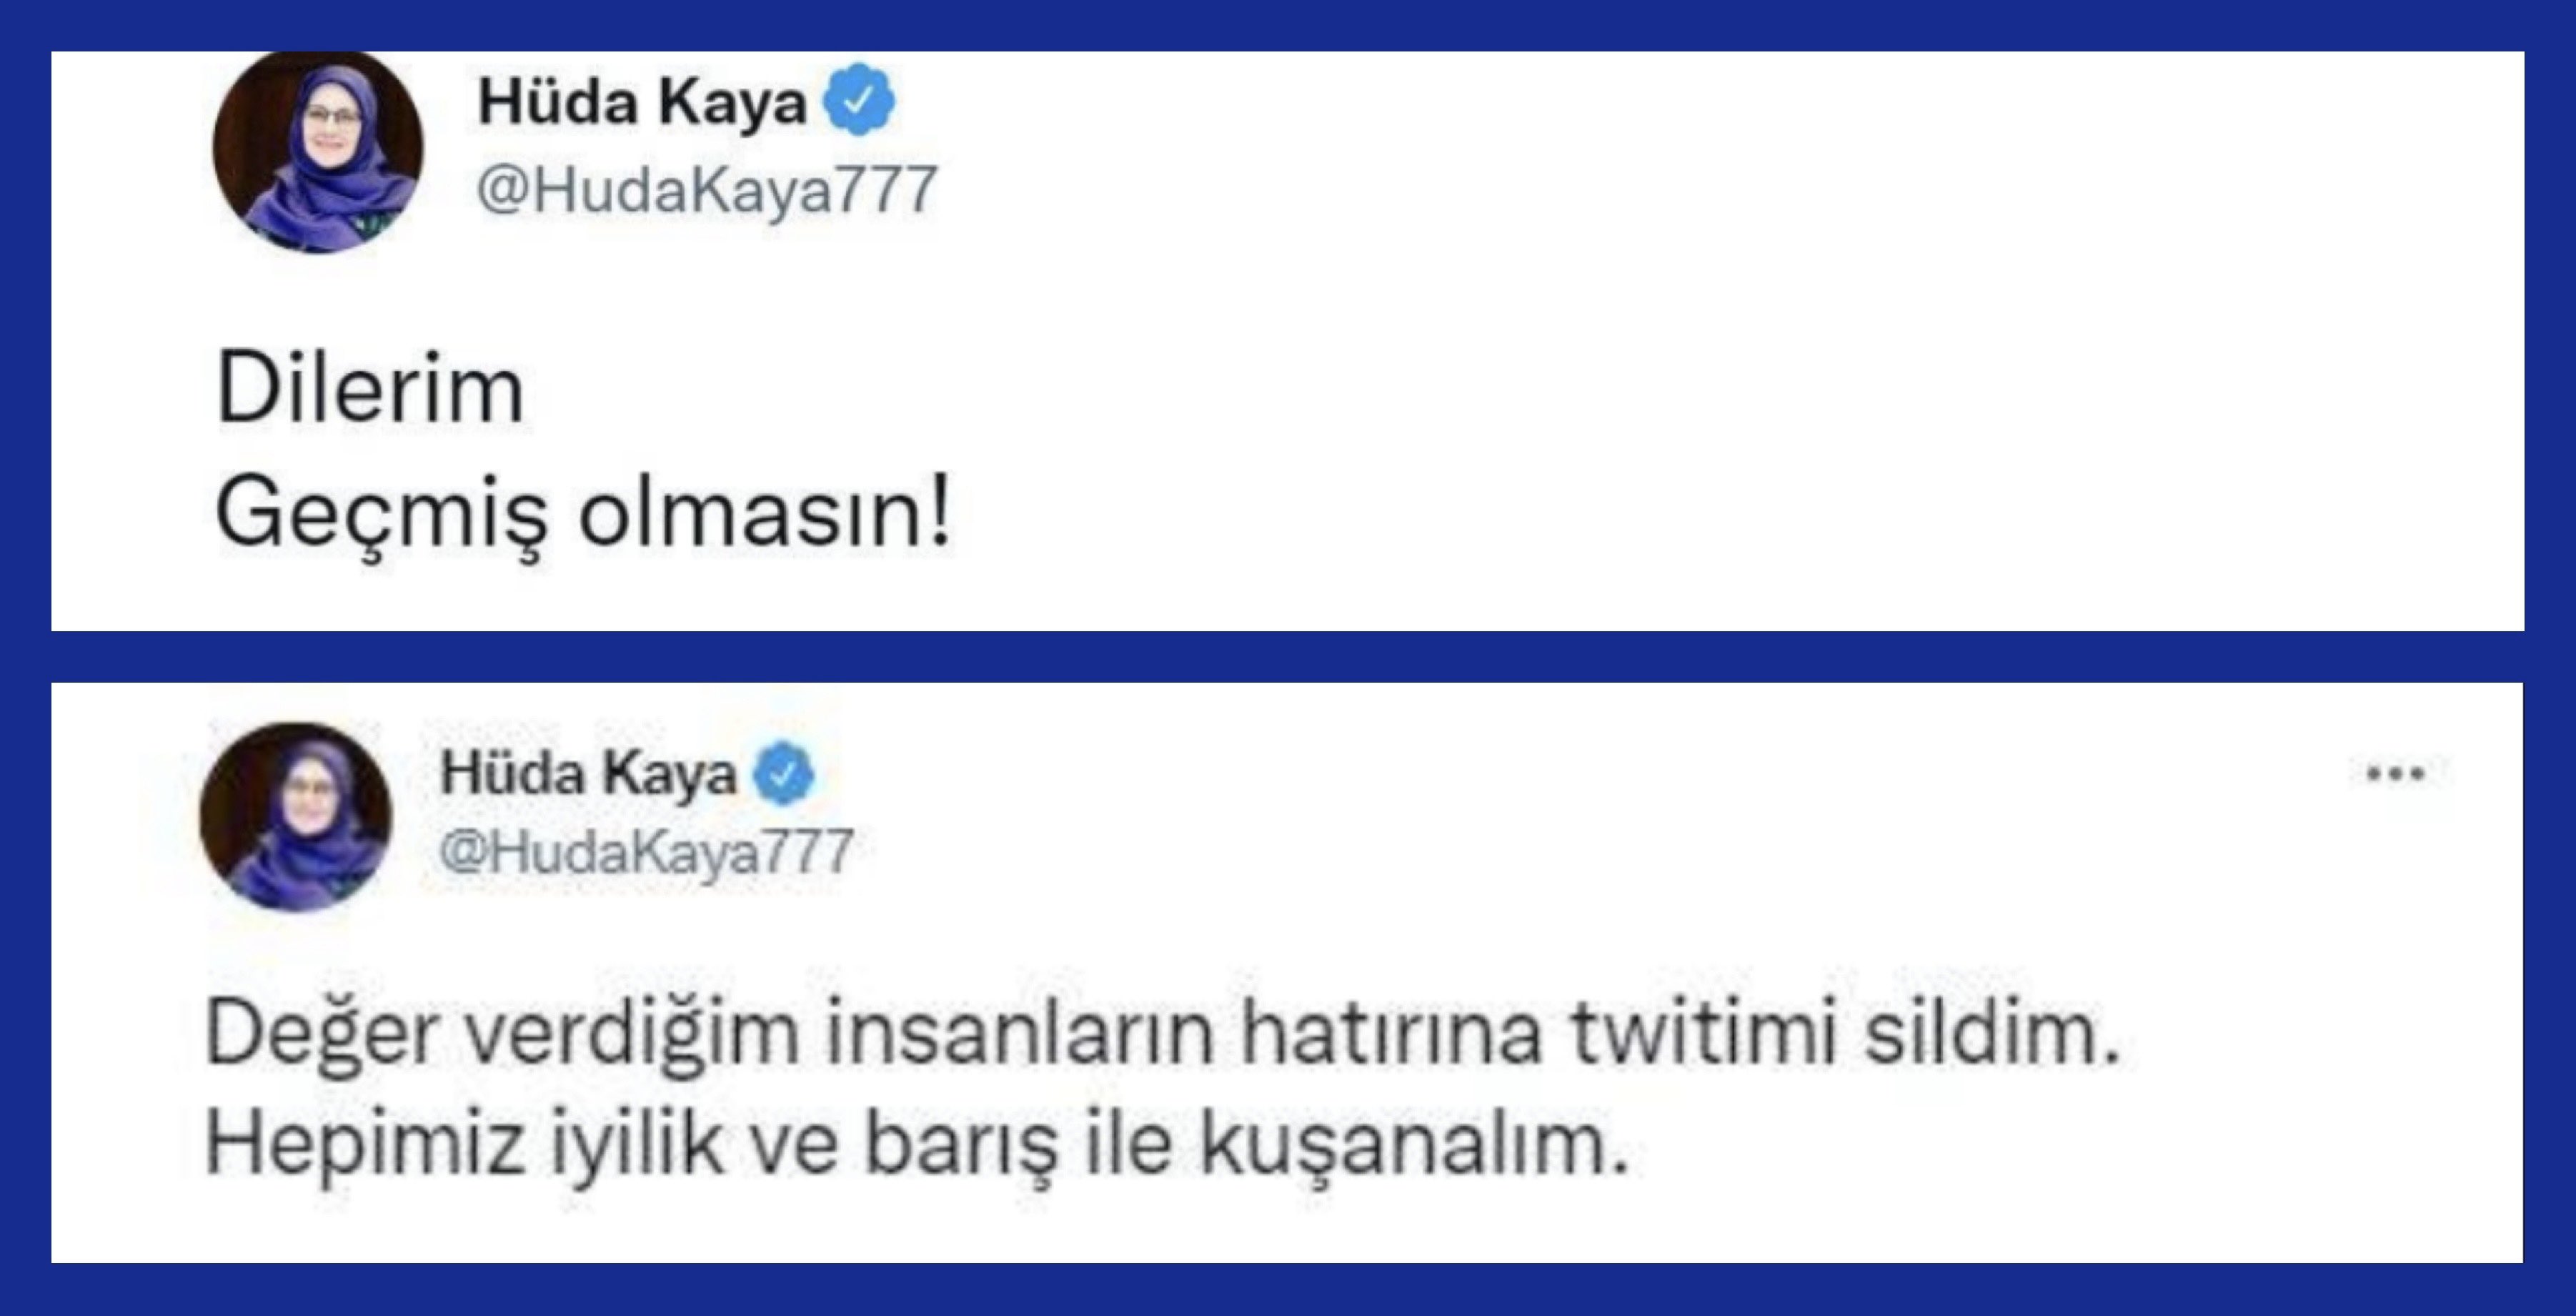 Başkan Erdoğan'a Dilerim geçmiş olmasın diyen HDP'li Hüda Kaya, Ömer Çelik'in gazabına uğradı! Katillere kölelik yapan..